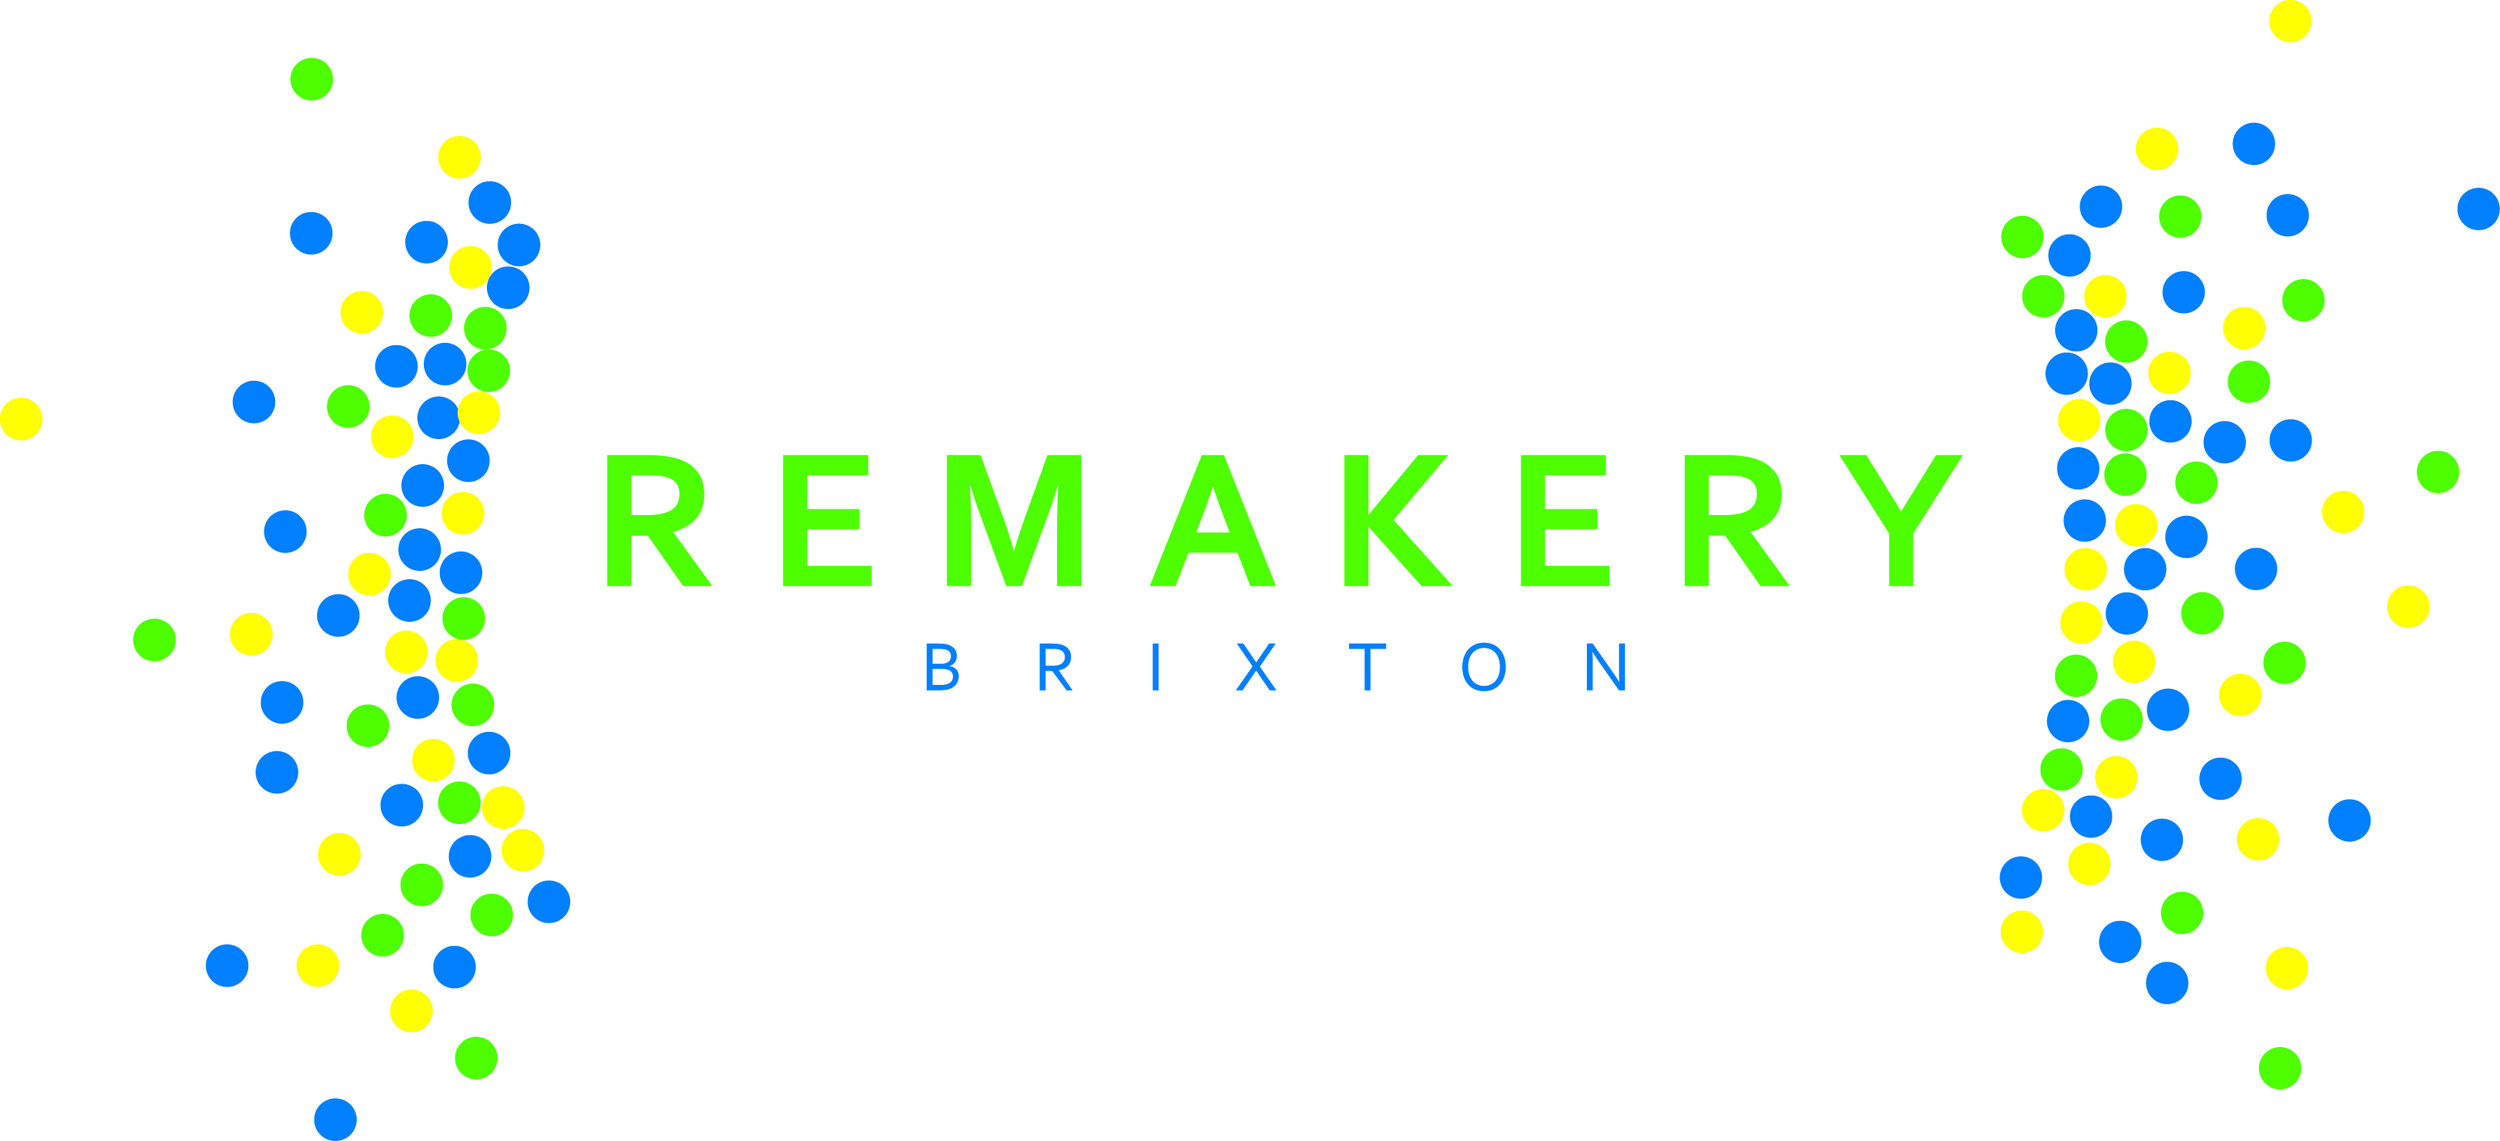 Brixton Remakery